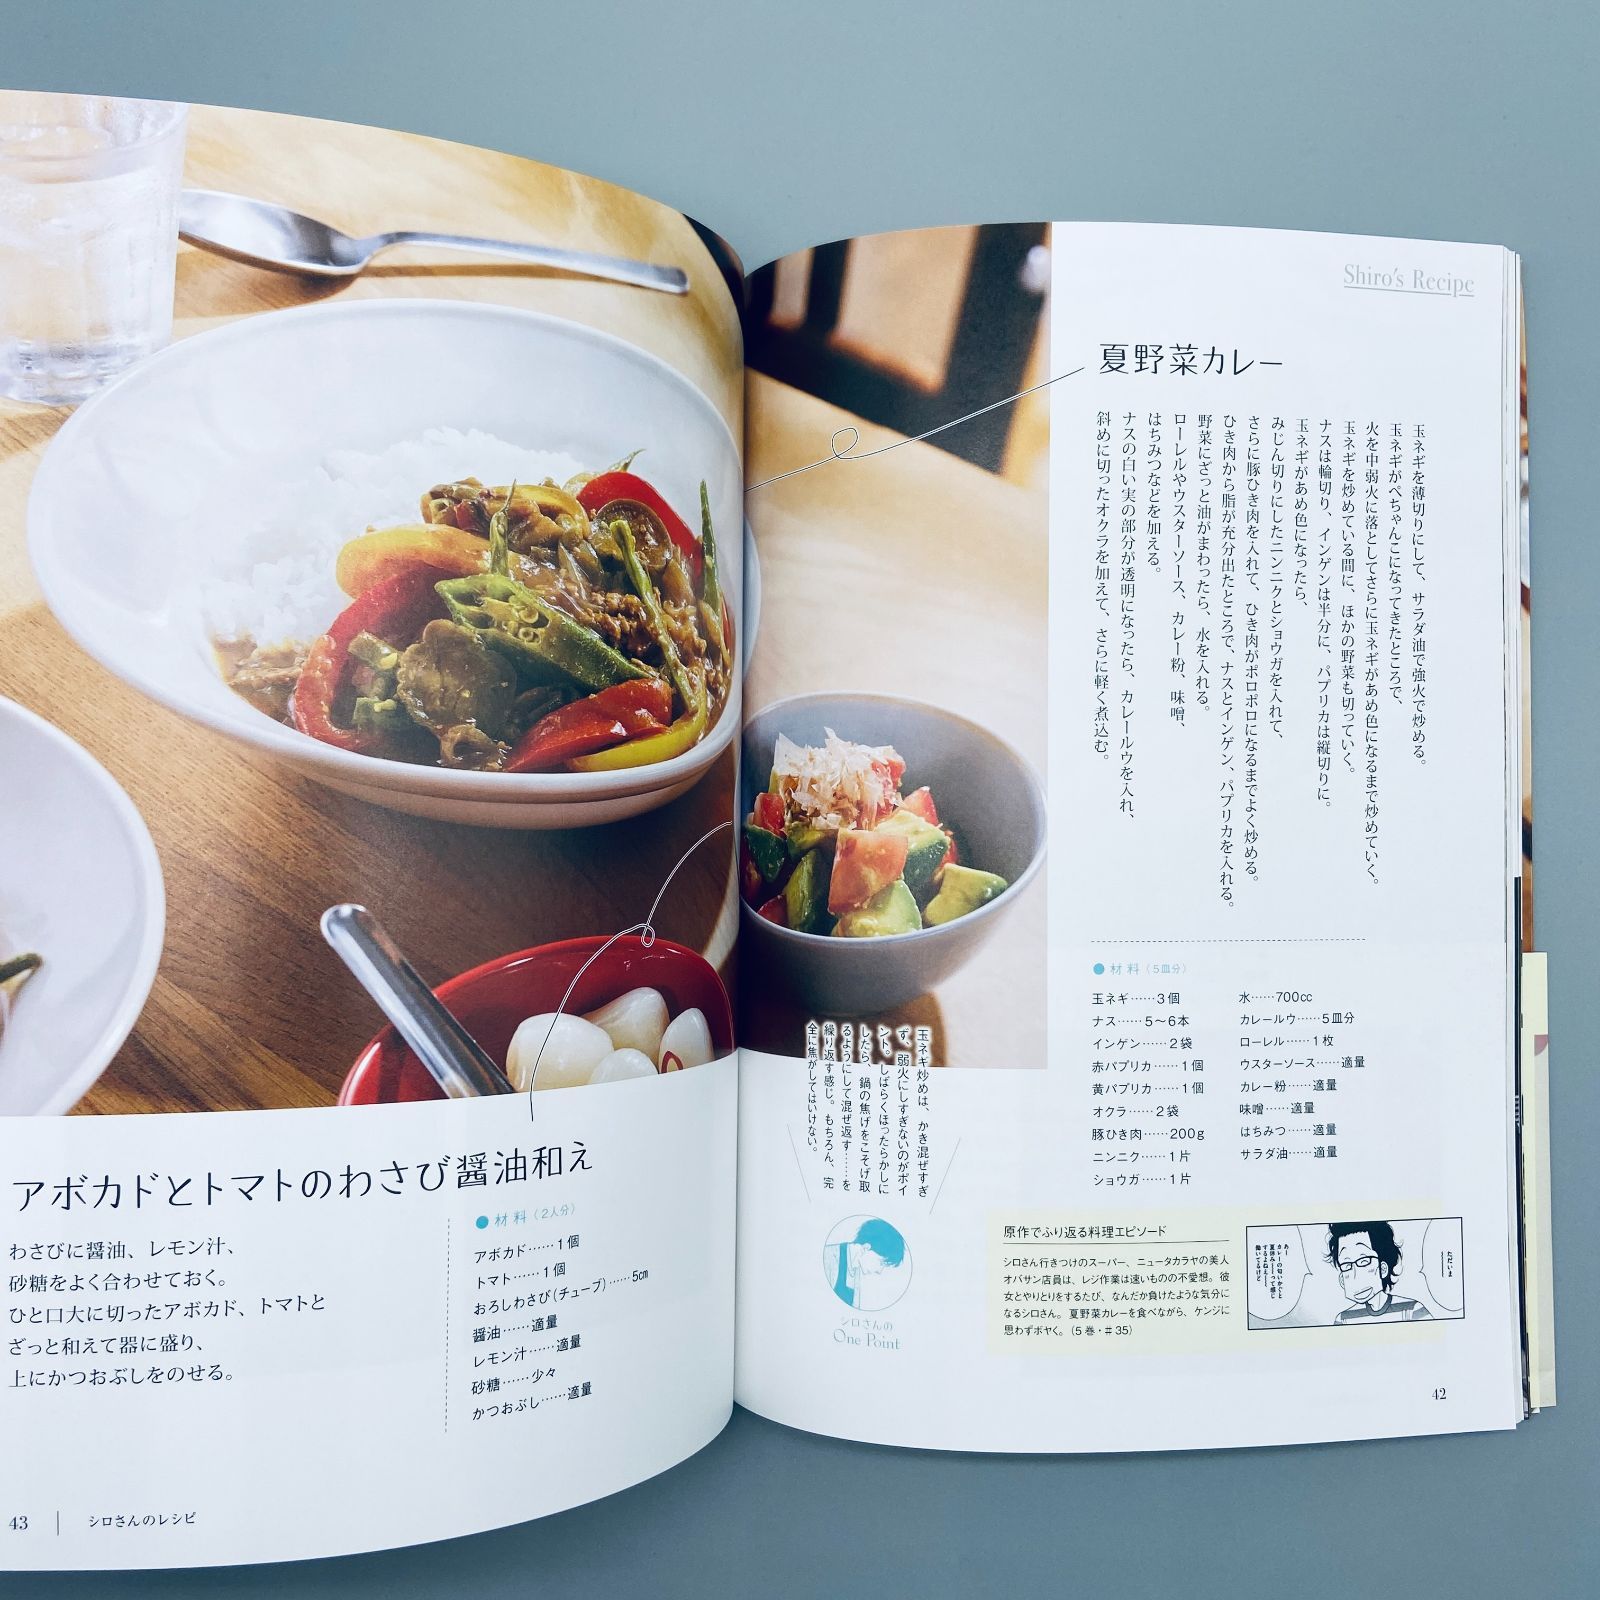 公式ガイド&レシピ きのう何食べた? シロさんの簡単レシピ 2冊セット 